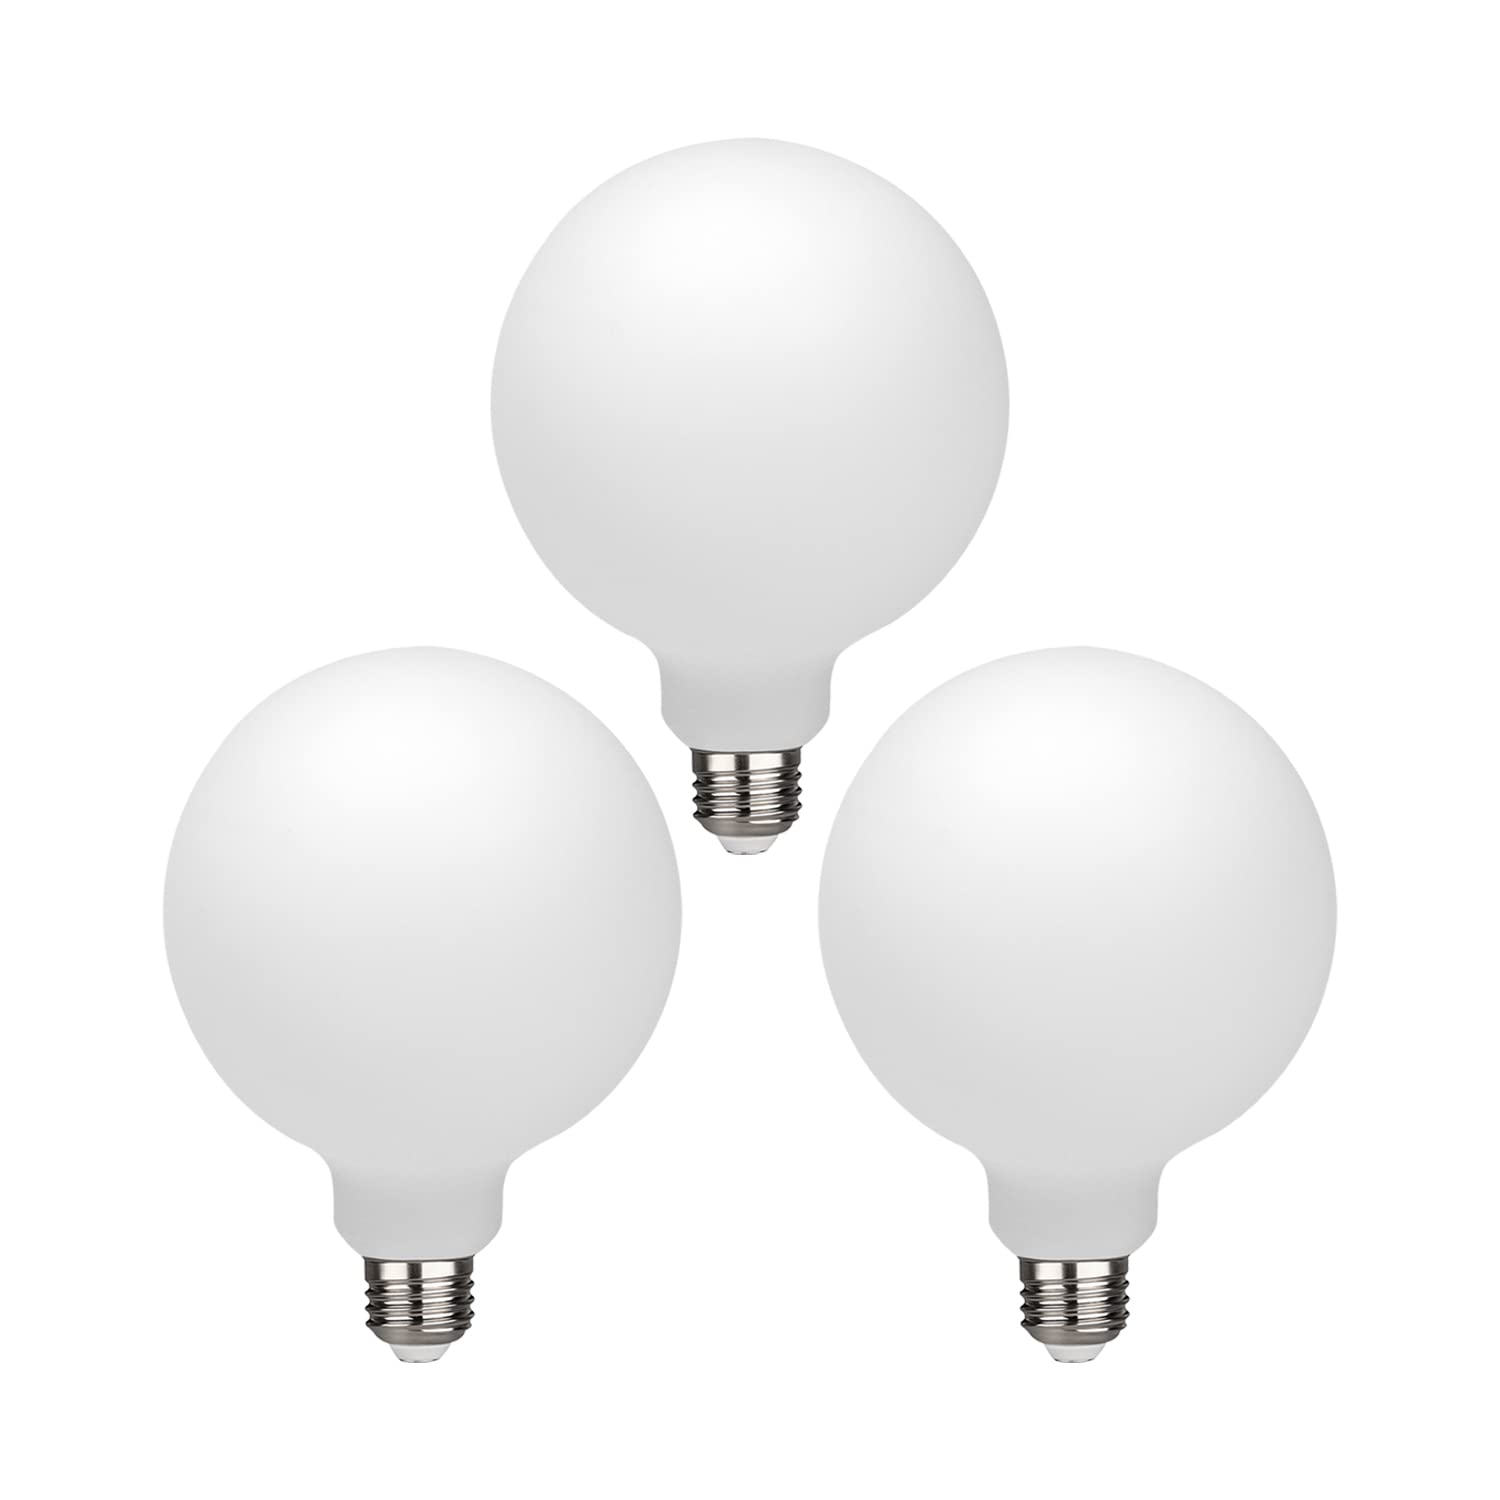 KGC LED Edison Globe Light Bulb, Warm White 2700K CRI 95, LED Filament Light Bulb, 5.5W Equivalent to 60W, G30(G95) Dimmable 600